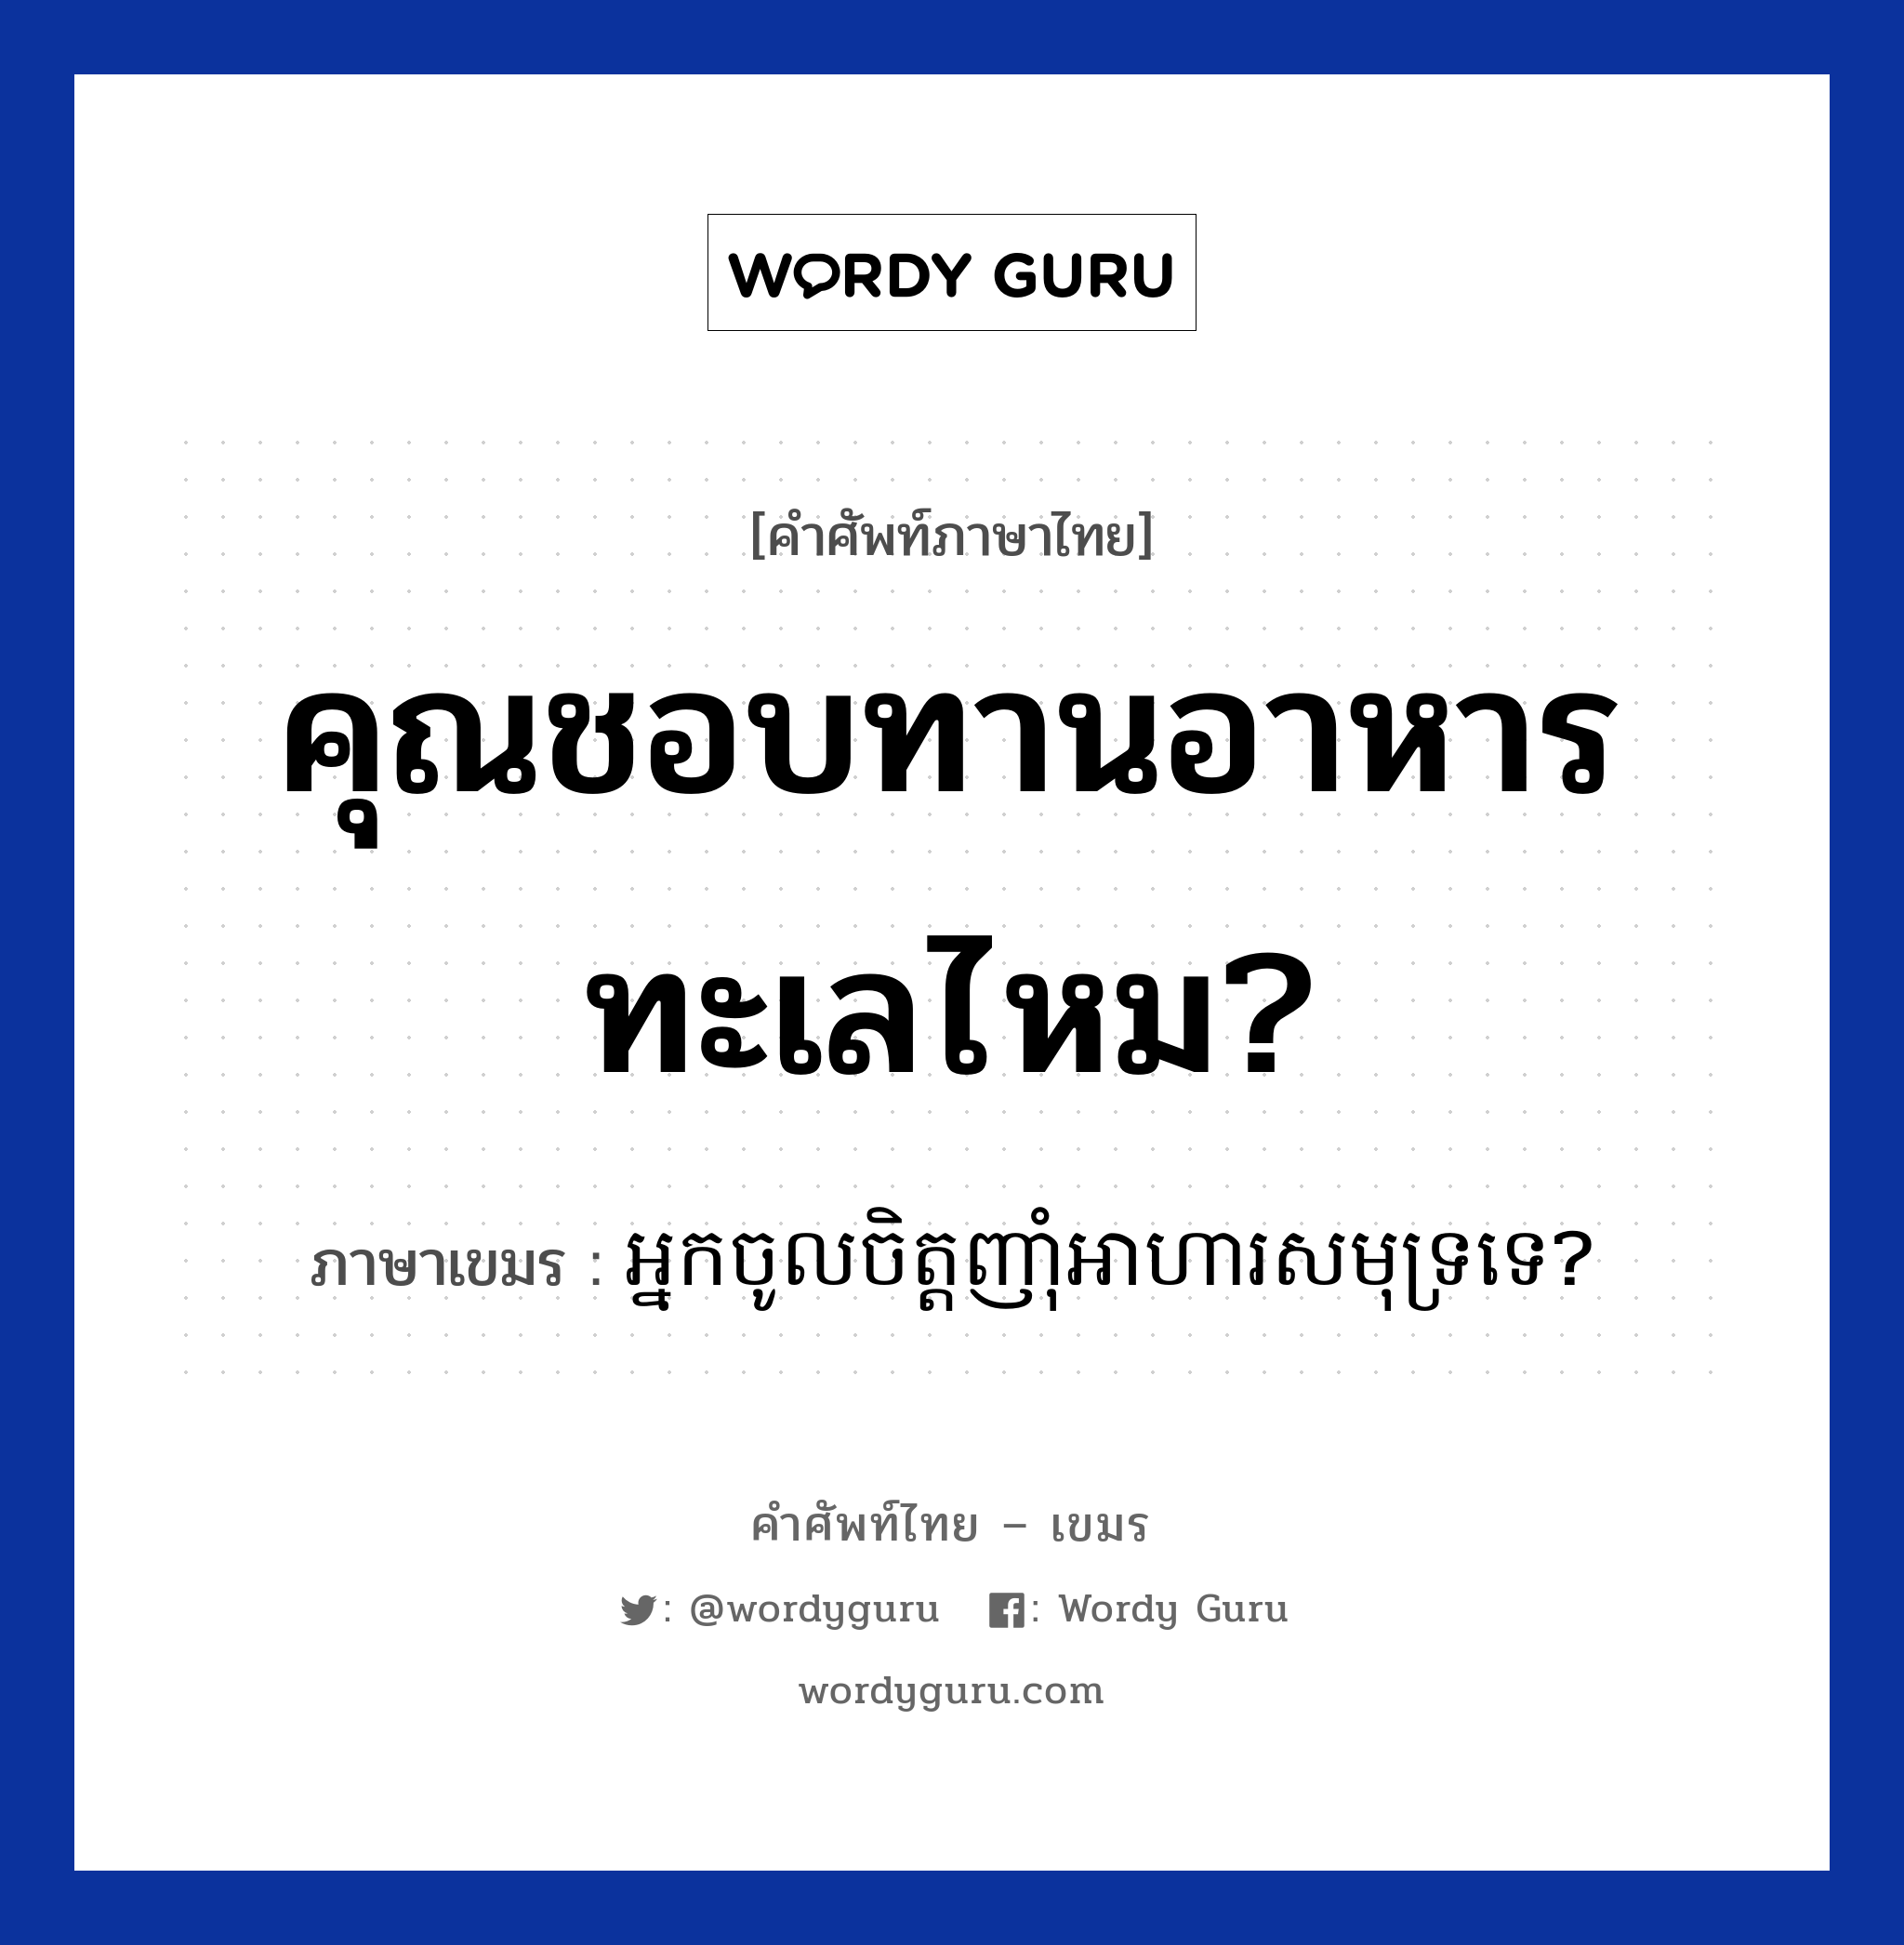 អ្នកចូលចិត្តញាំុអាហារសមុទ្រទេ? ภาษาไทย?, คำศัพท์ภาษาไทย - เขมร អ្នកចូលចិត្តញាំុអាហារសមុទ្រទេ? ภาษาเขมร คุณชอบทานอาหารทะเลไหม? หมวด บทสนทนาเกี่ยวกับอาหาร Neak chol chit nham arha samut te? หมวด บทสนทนาเกี่ยวกับอาหาร